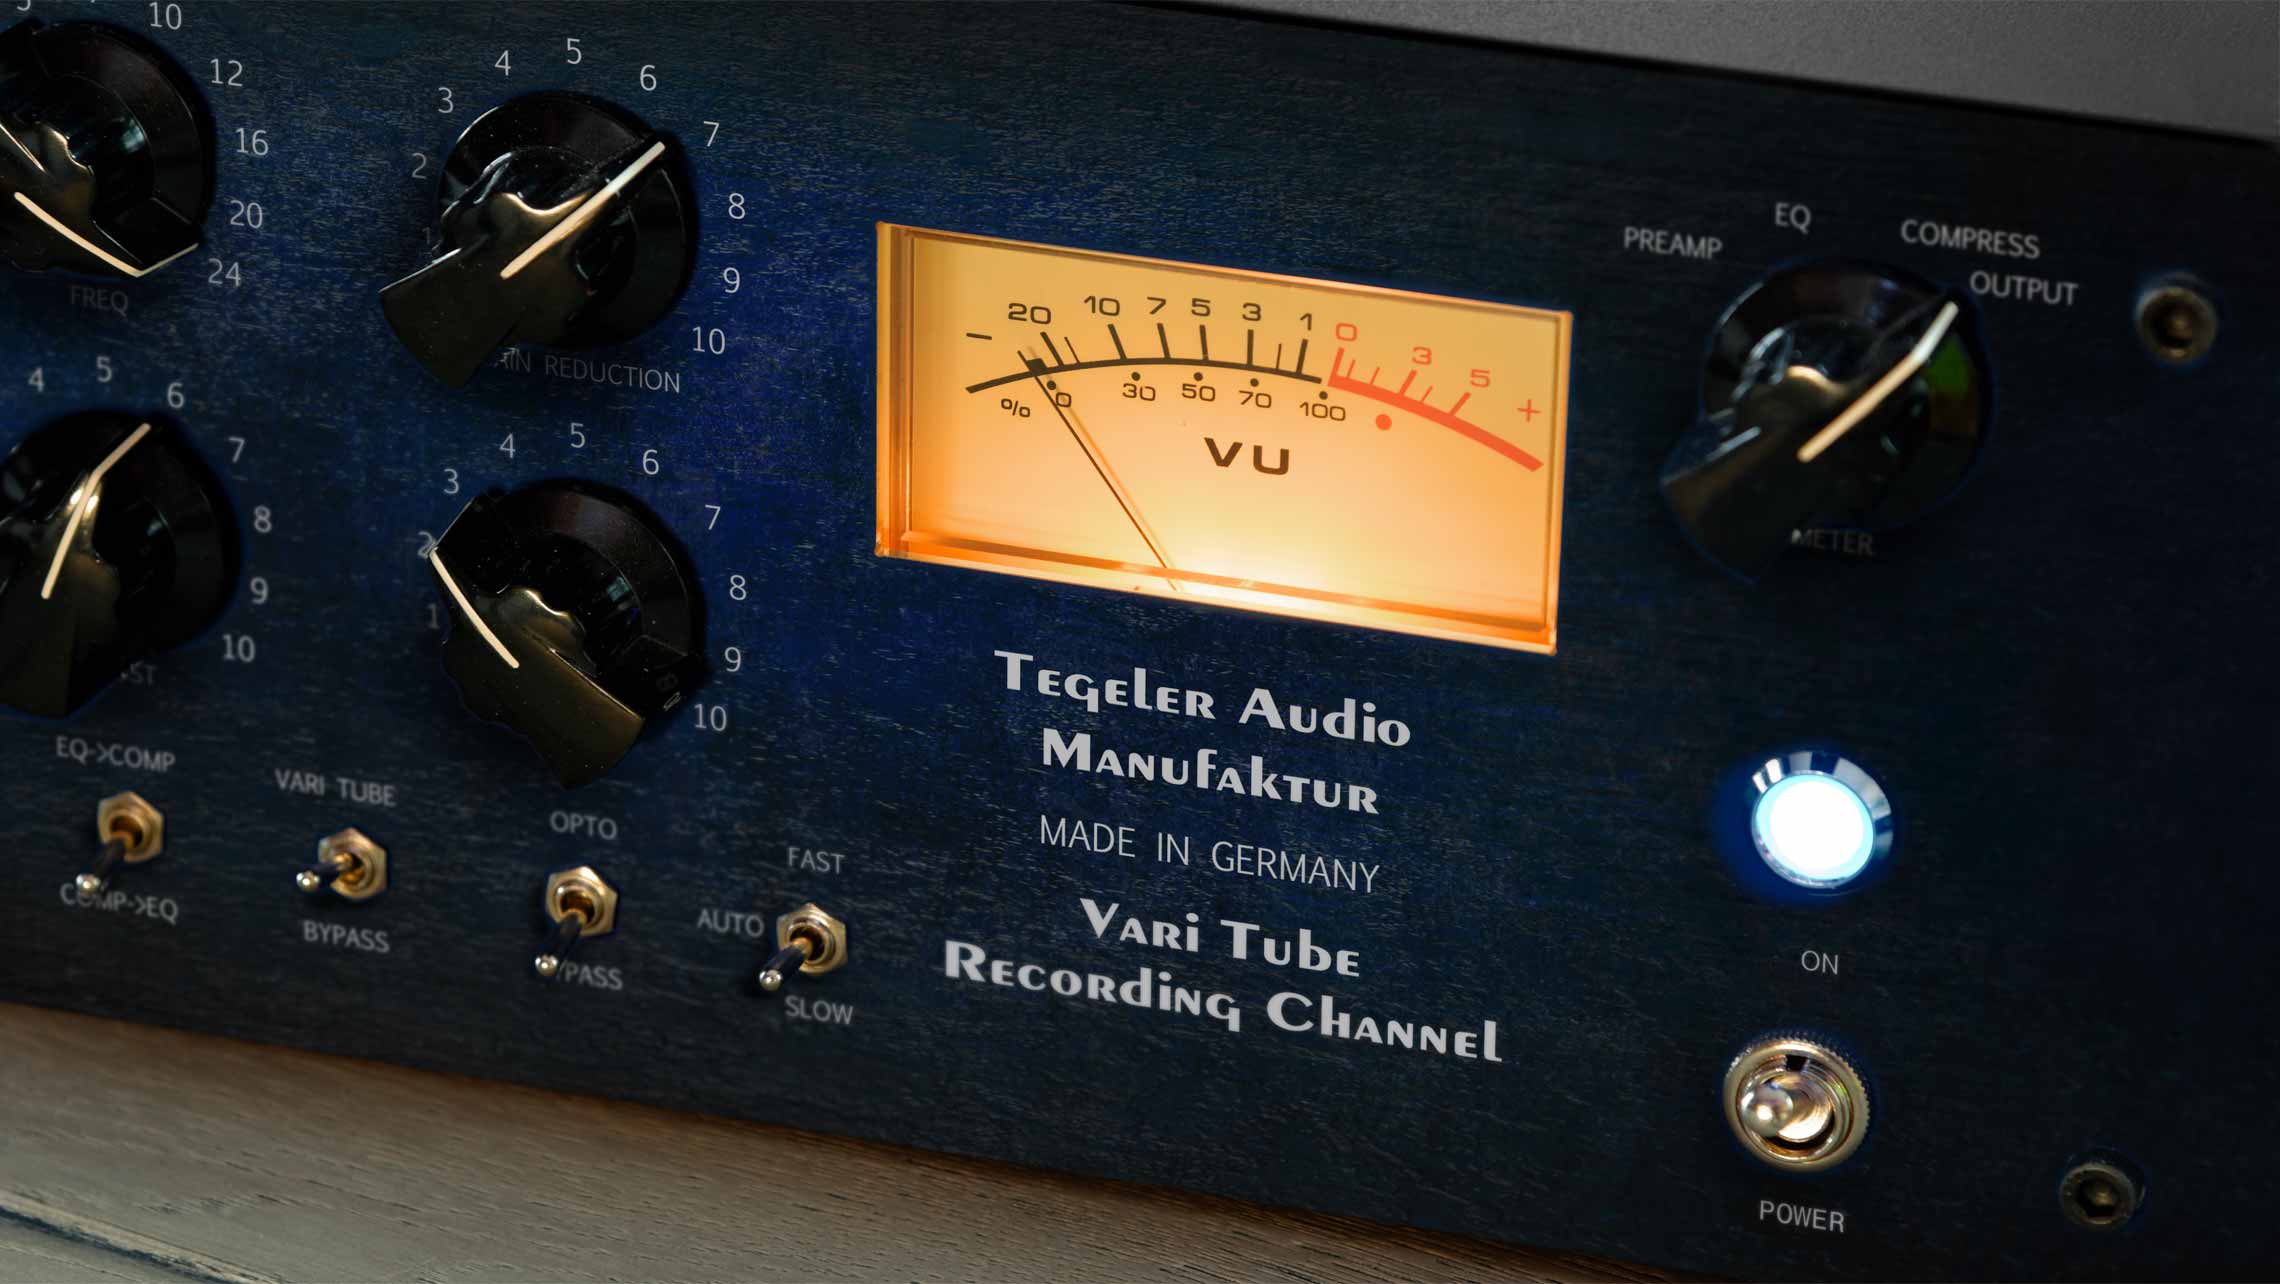 Tegeler Audio Manufaktur Vtrc Recording Channel - Preamp - Variation 1